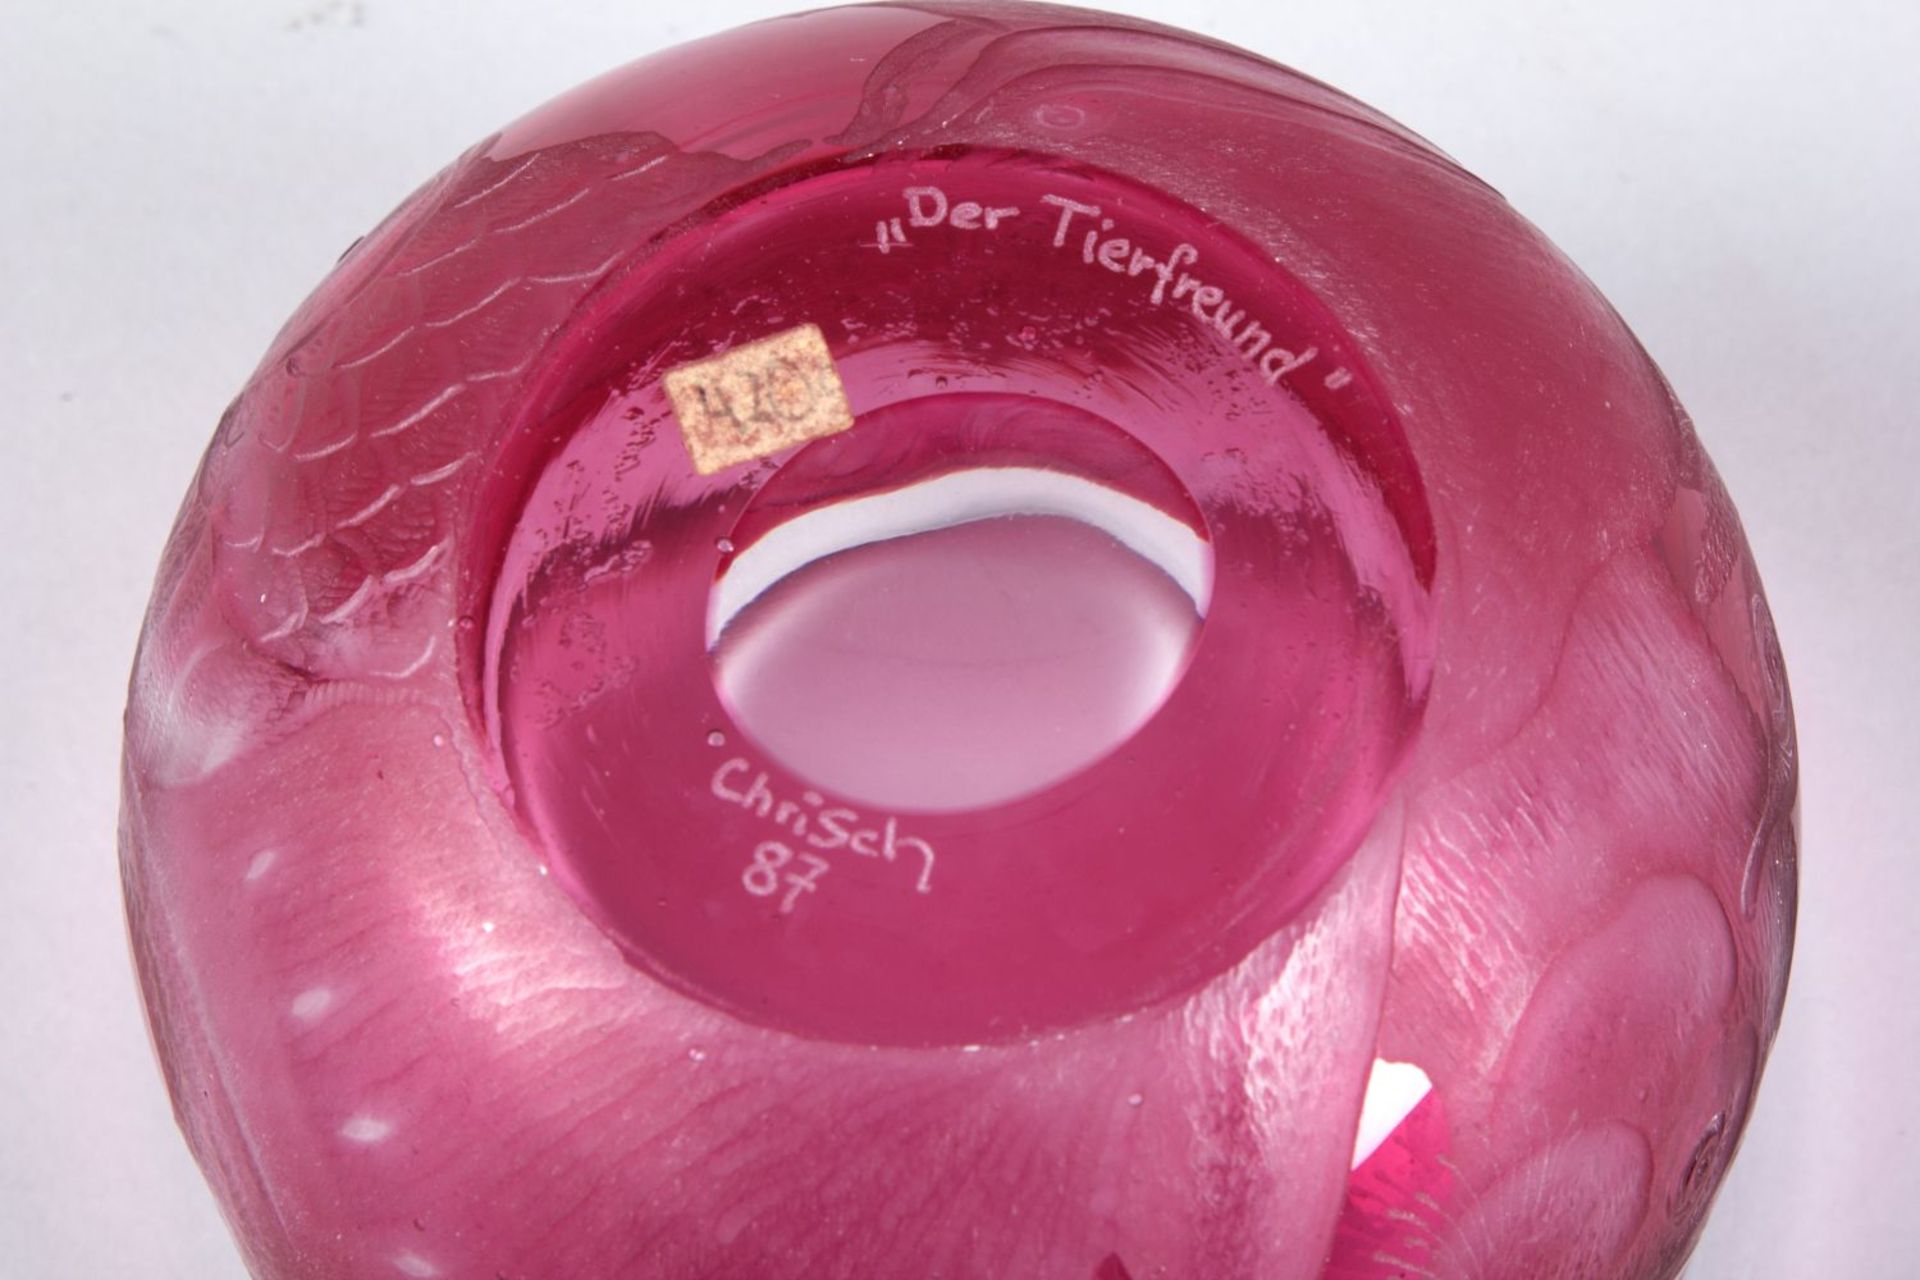 Vase "Der Tierfreund"Farbloses Glas, rubinrot überfangen. Umlaufend Überfangreliefgravur mit Kopf im - Bild 2 aus 2